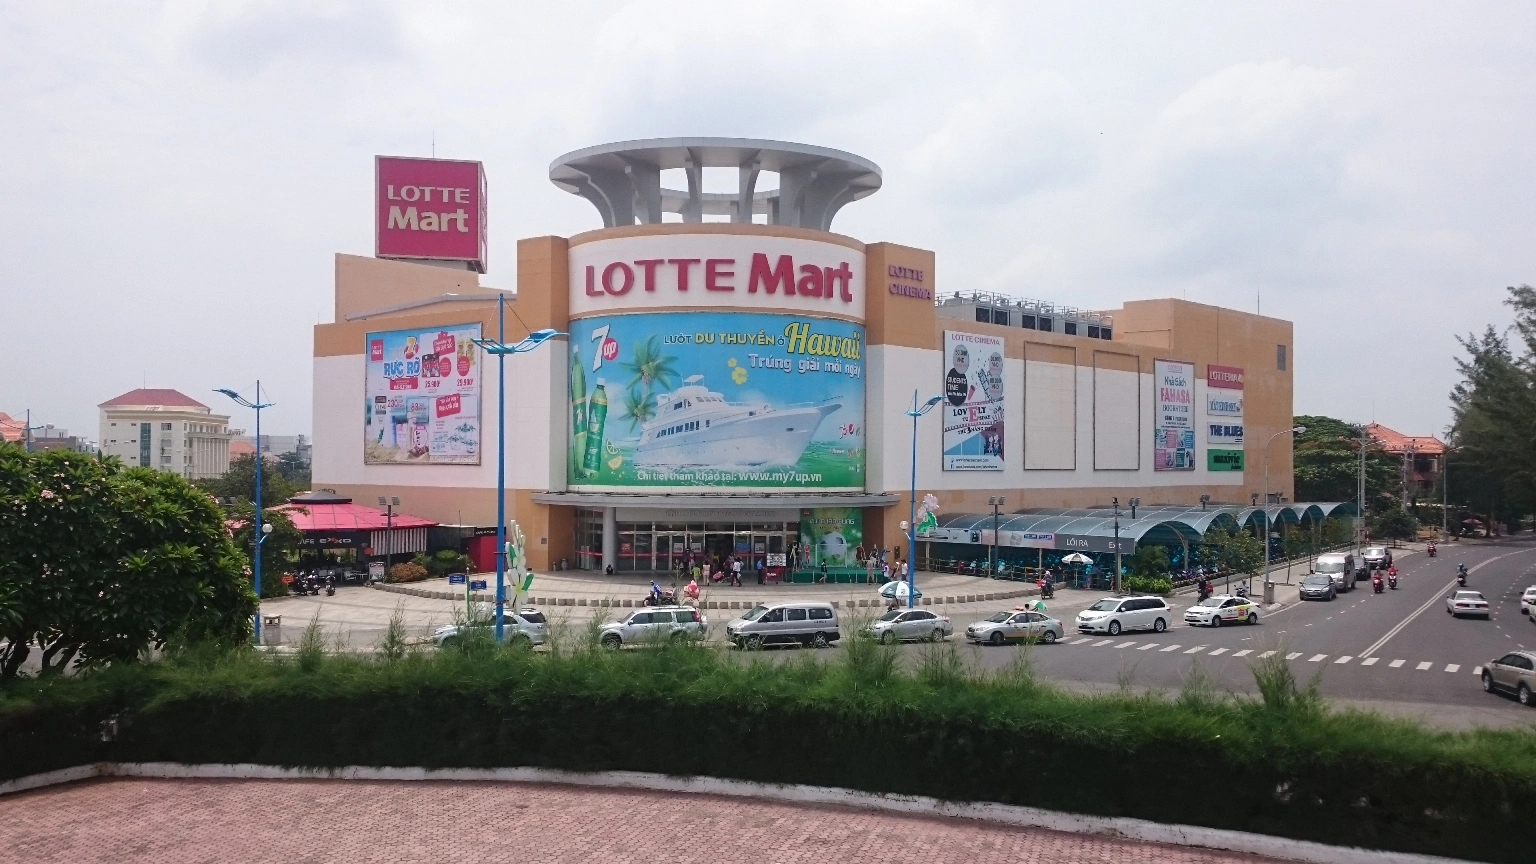 
Dự án Lotte Mart, một trong bốn dự án bà Công yêu cầu thanh tra khi bị điều chuyển
